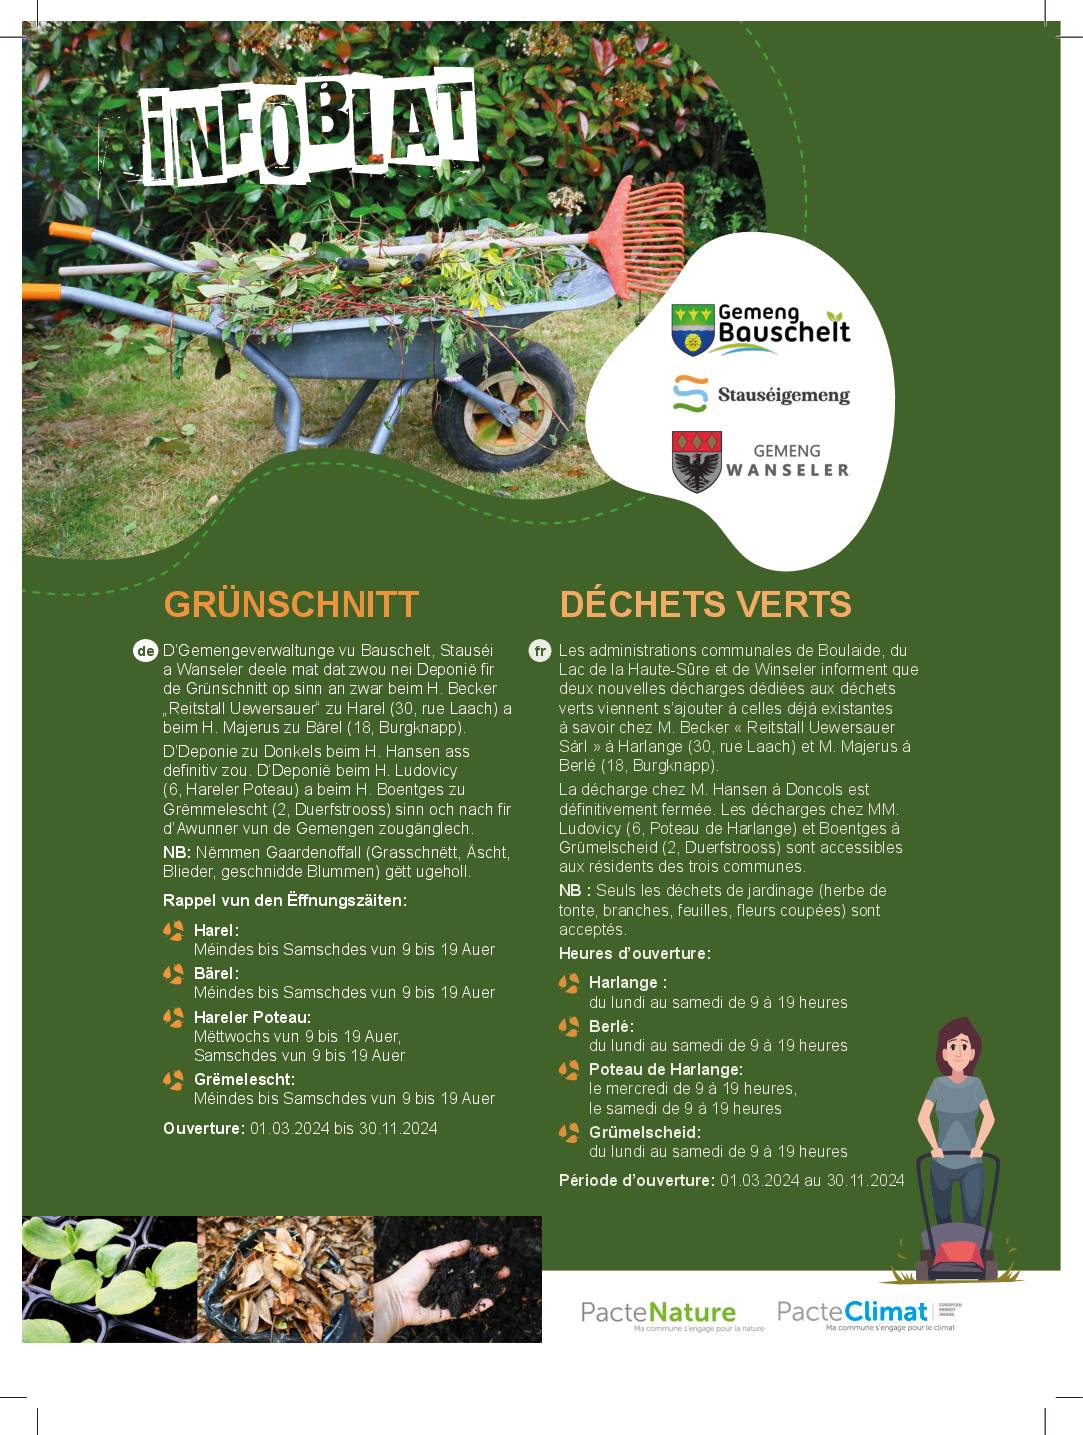 Infoblat: déchets verts/Grünschnitt